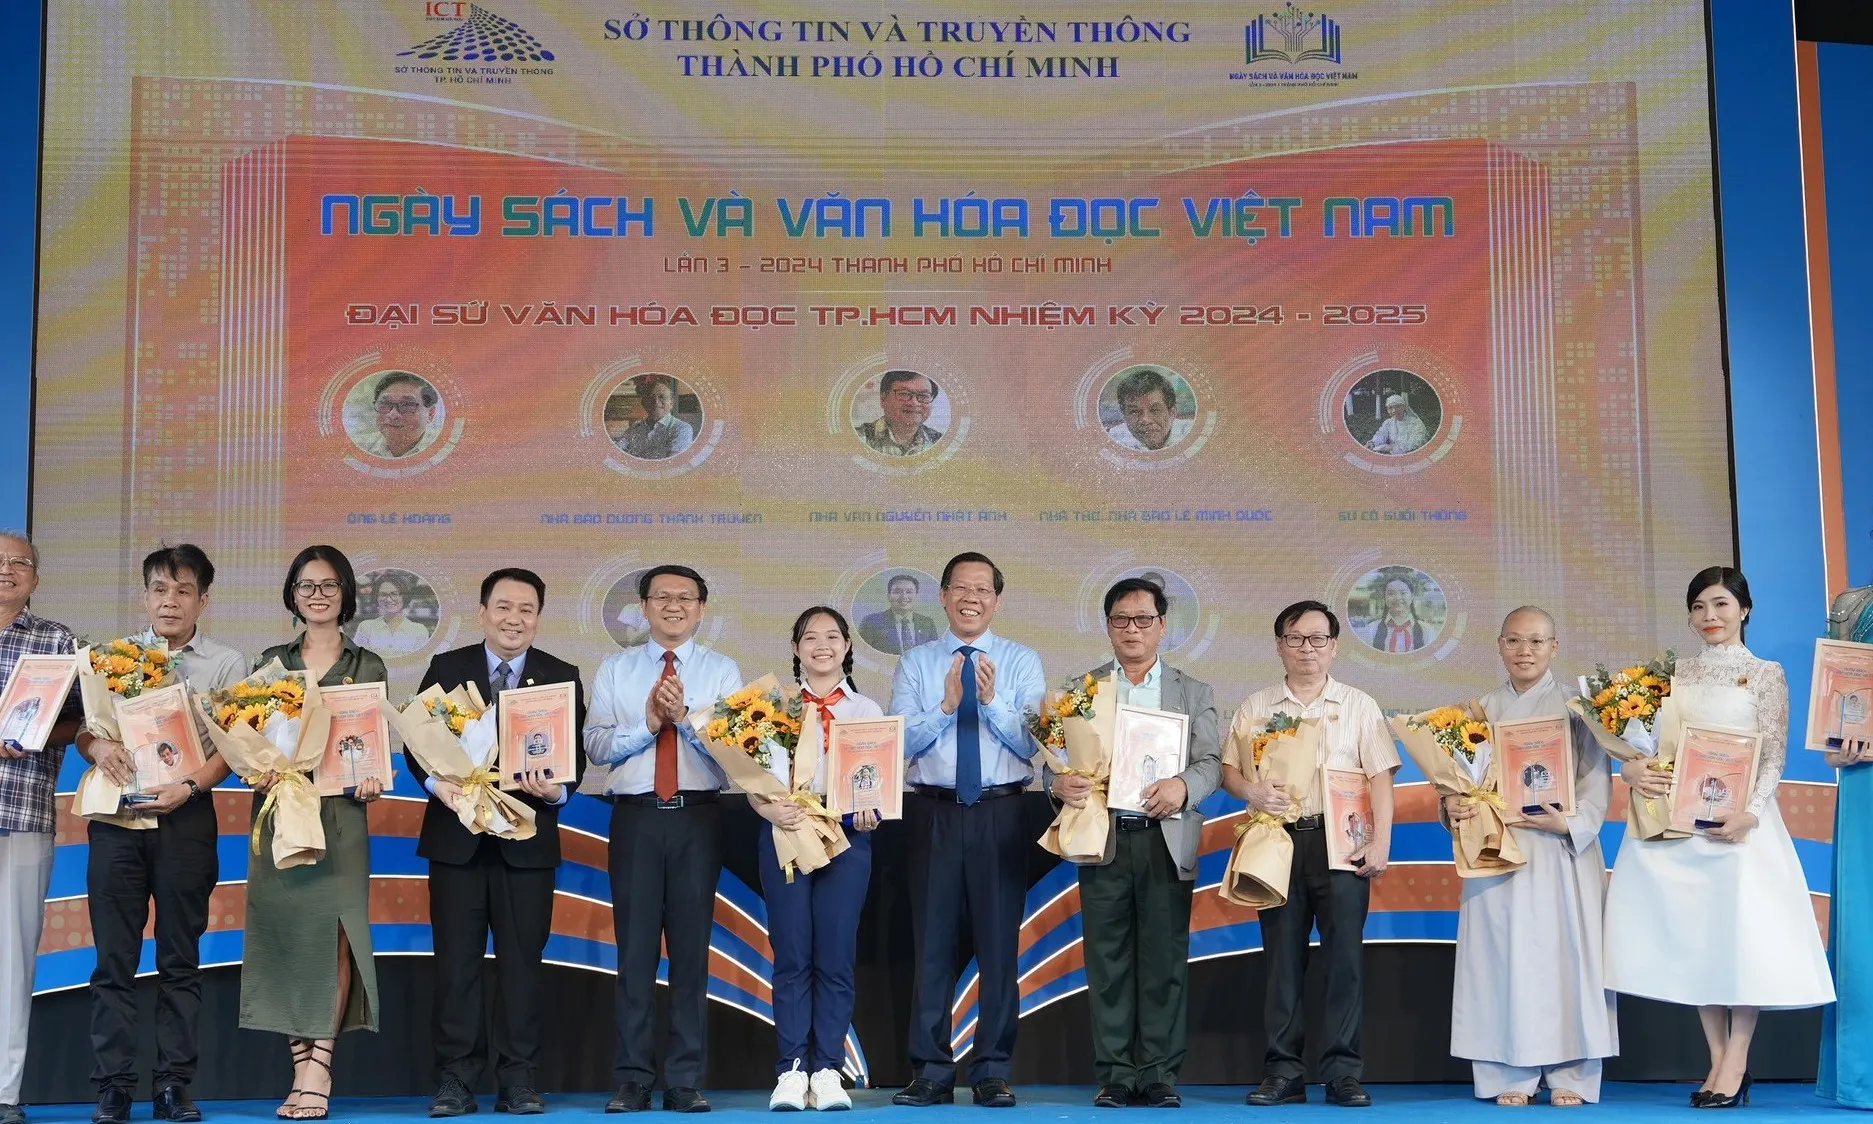 Thành phố Hồ Chí Minh có Câu lạc bộ Đại sứ Văn hóa đọc